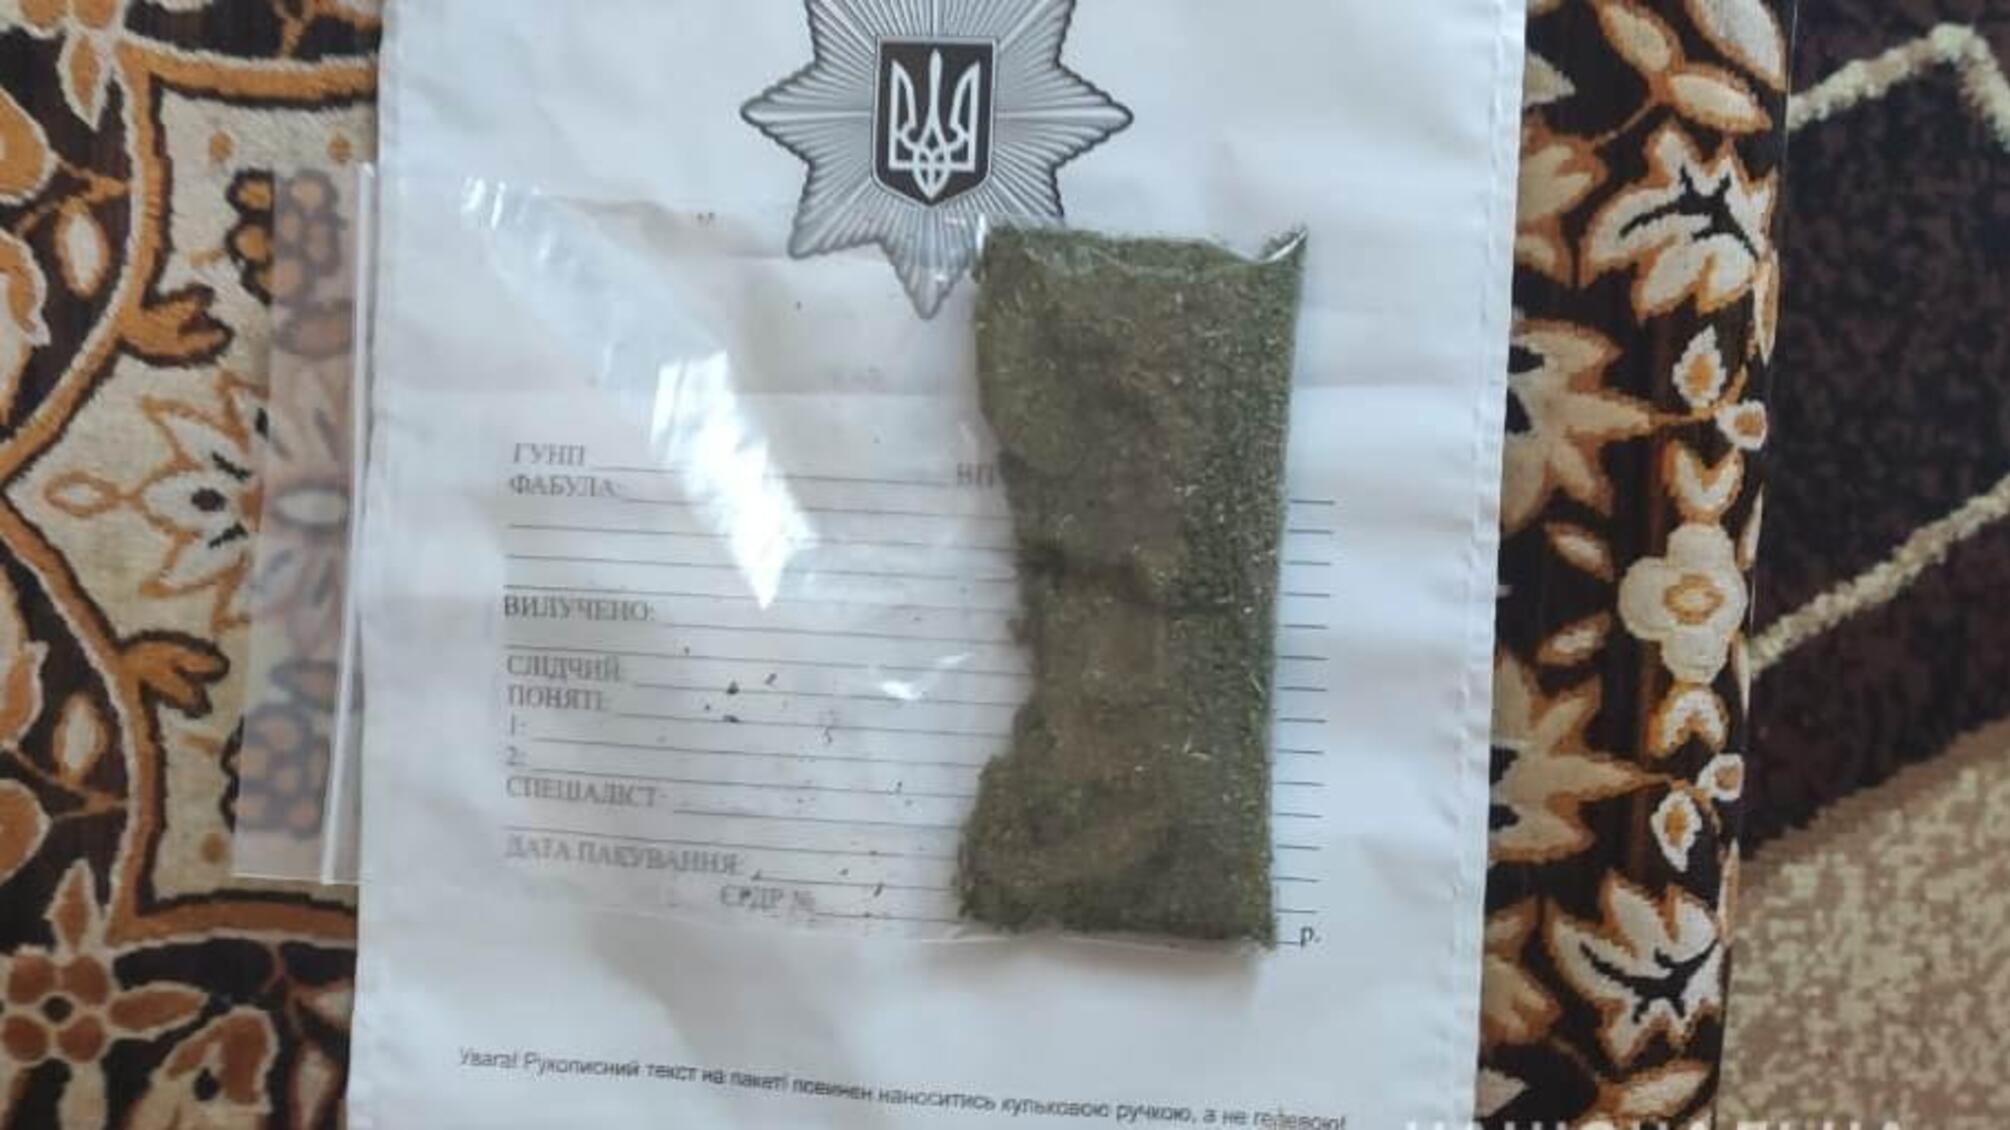 Правоохоронці Білгорода-Дністровського вилучили у жителів району крадені речі та наркотики